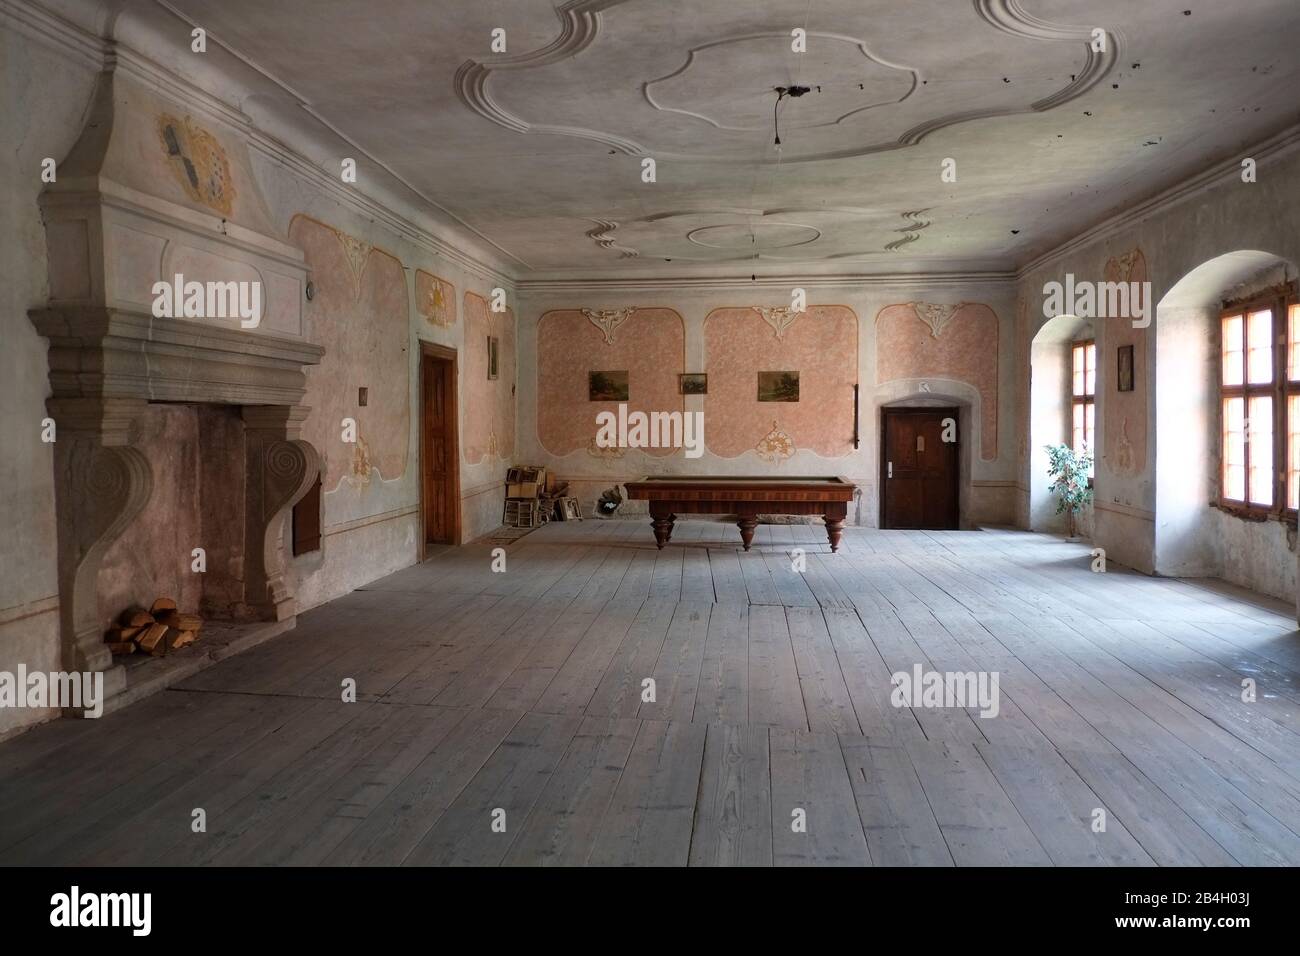 Das 1945 von seinen Besitzern beschlagnahmte Schloss Brtnice, das systematisch von allen Gegenständen zerrissen wurde, einschließlich Möbeln und Gemälden, das einzige, was nicht gestohlen wurde, ist der große Billardtisch in diesem Ballsaal, der zu schwer zu heben ist. Stockfoto